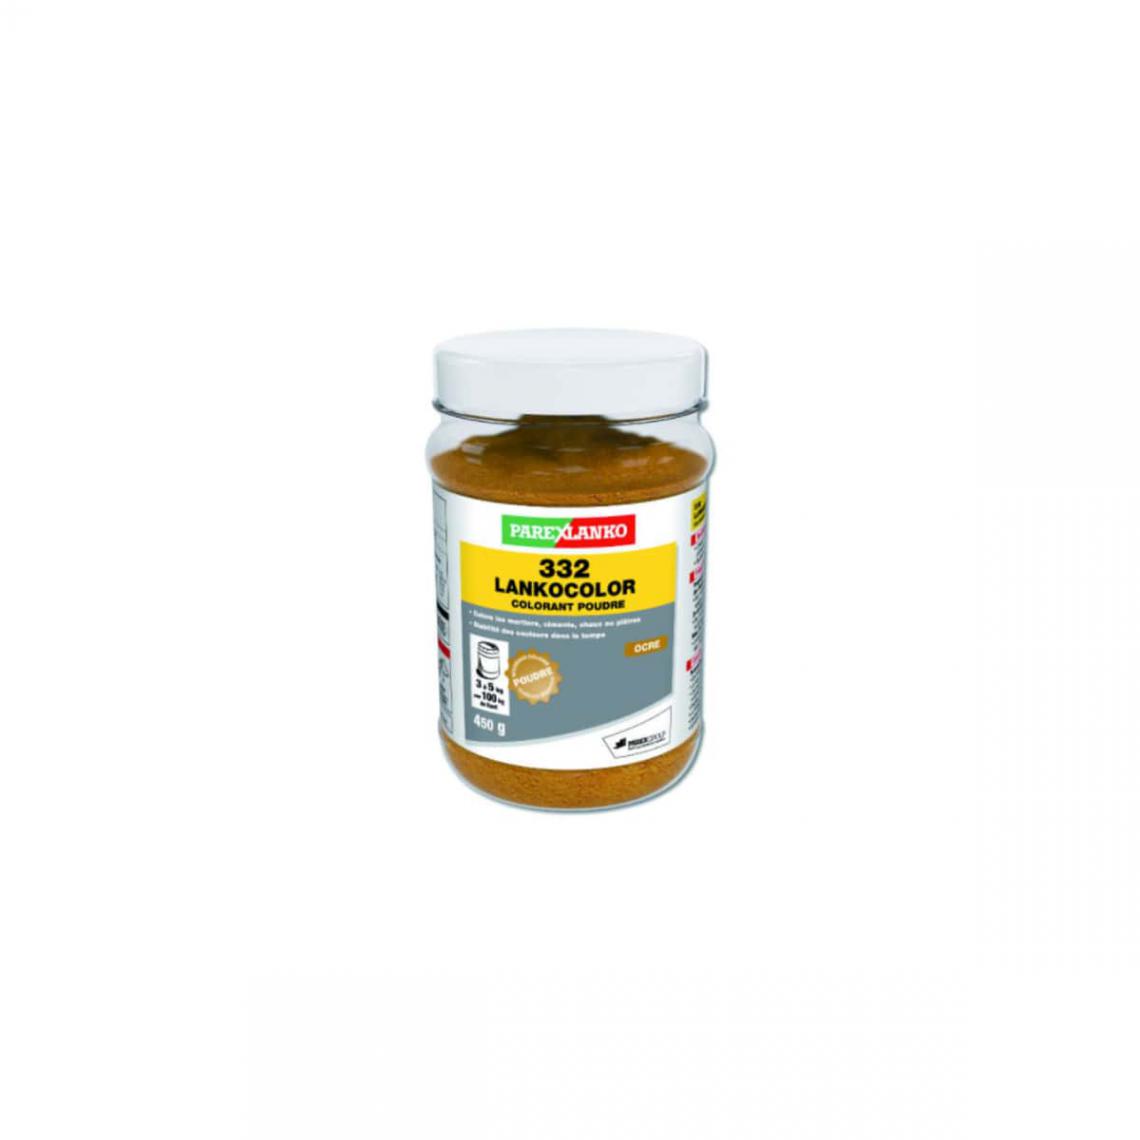 Soloplast - Colorant en poudre PAREXLANKO LANKOCOLOR ocre - 450g - L332OCRE450 - Peinture extérieure